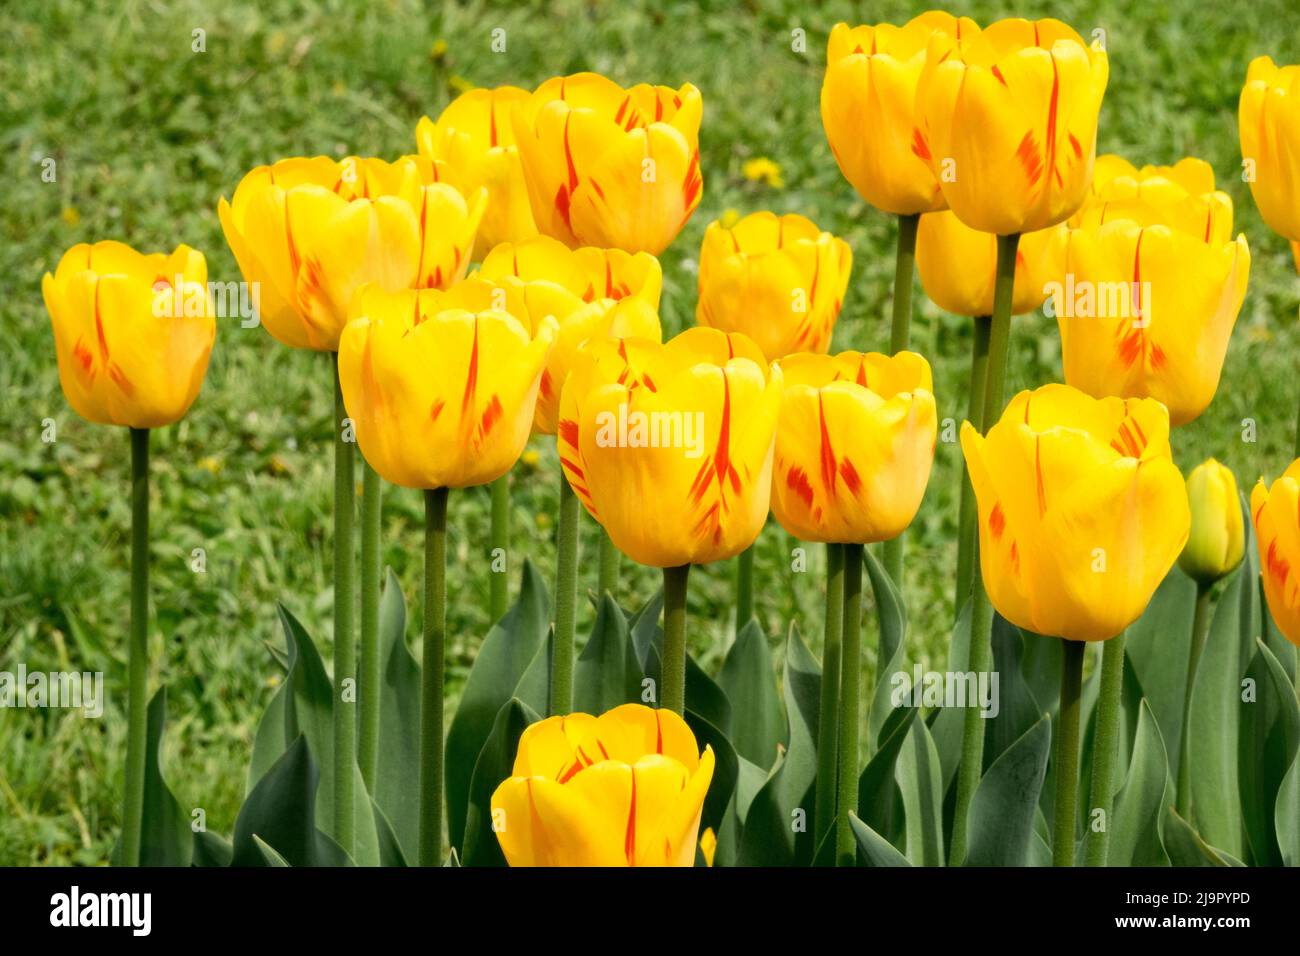 Darwin hybride, Tulips, Groupe, jaune, fleurs, Couleurs, printemps, fleur, lit, Blooms Banque D'Images